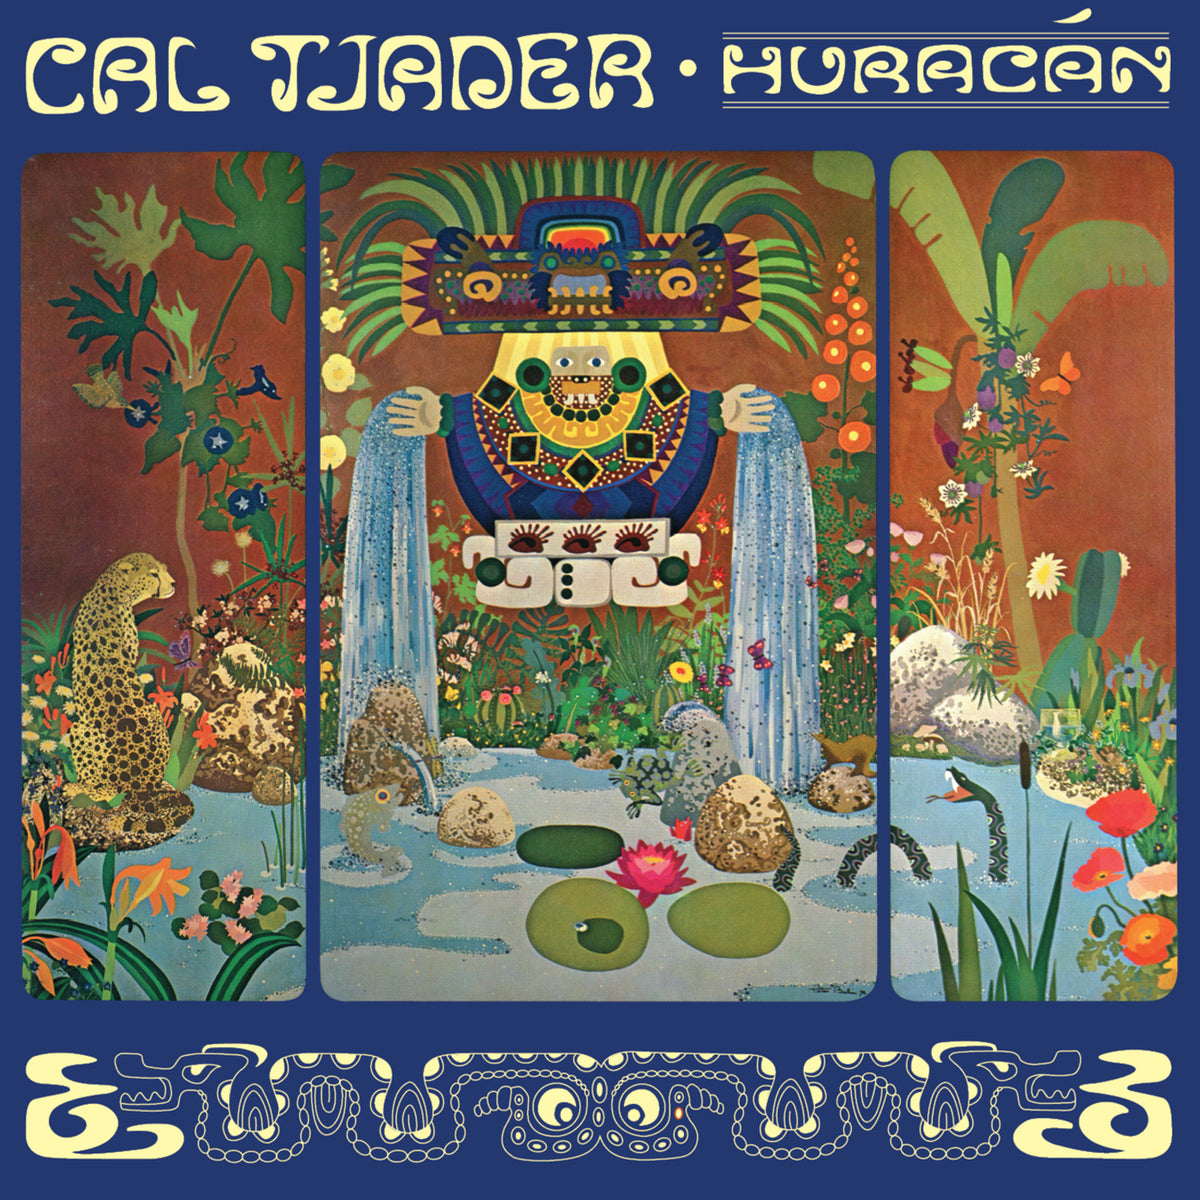 Cal Tjader - Huracan - LIB5113